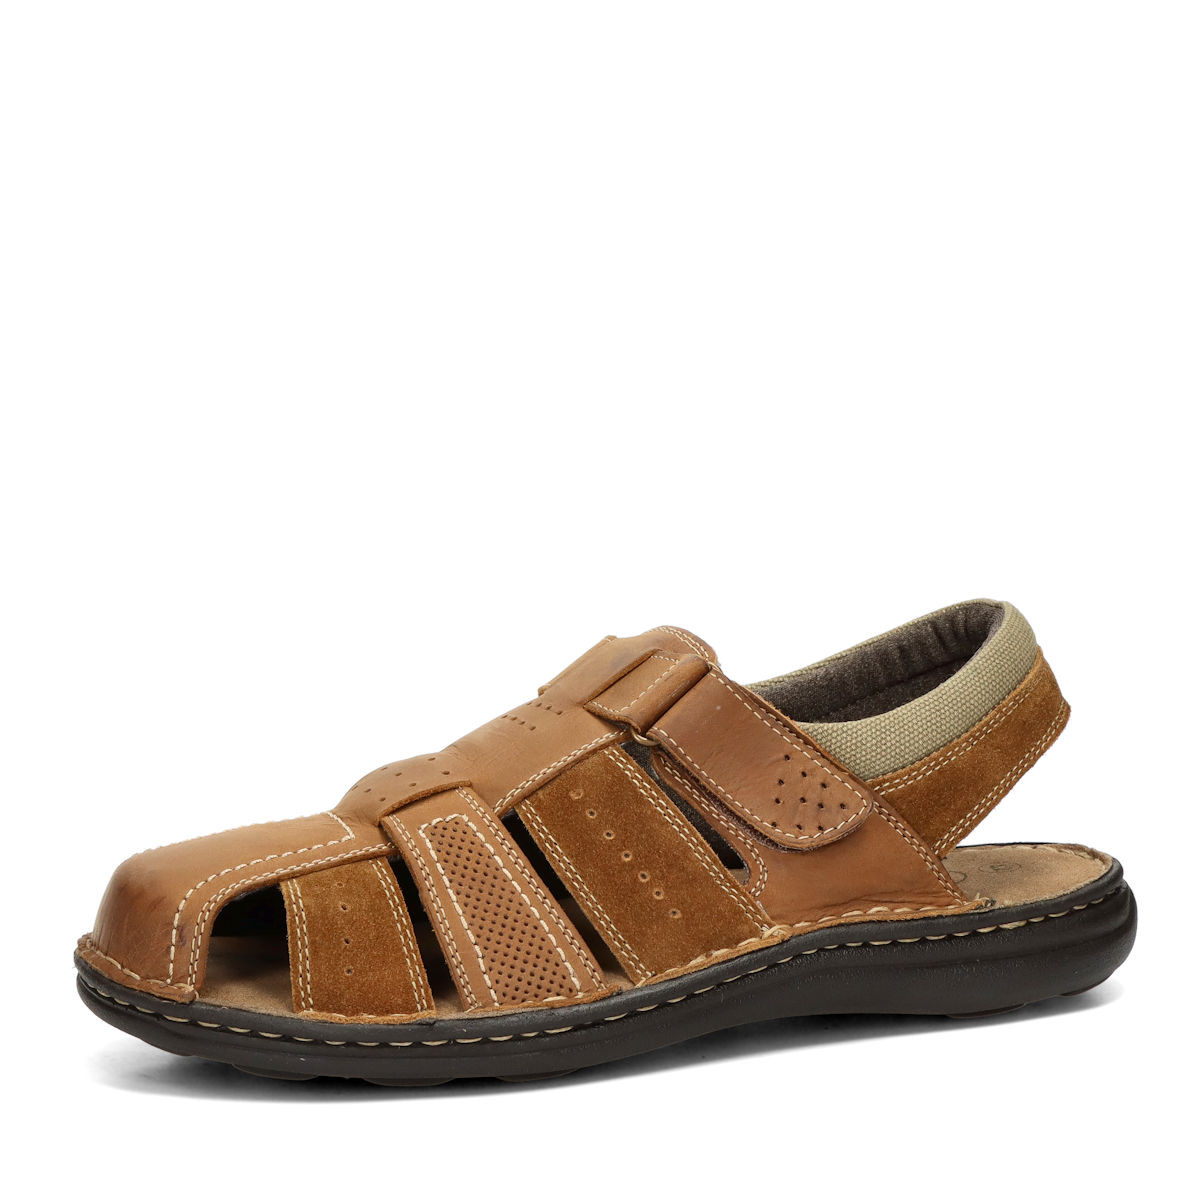 Klondike pánské komfortní sandály - hnědé - 40